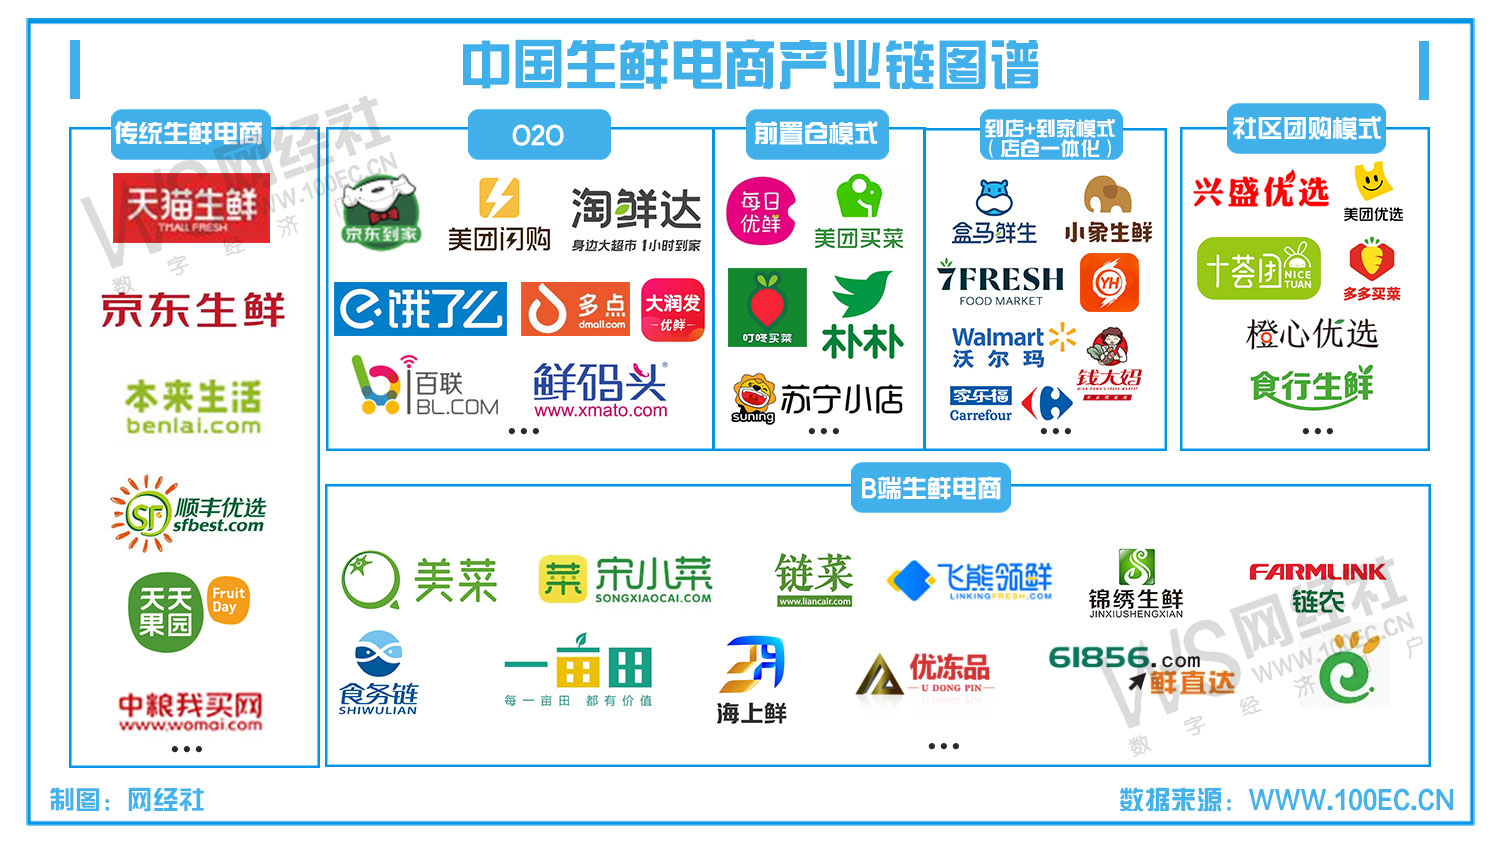 中国生鲜电商产业链图谱(6).jpg